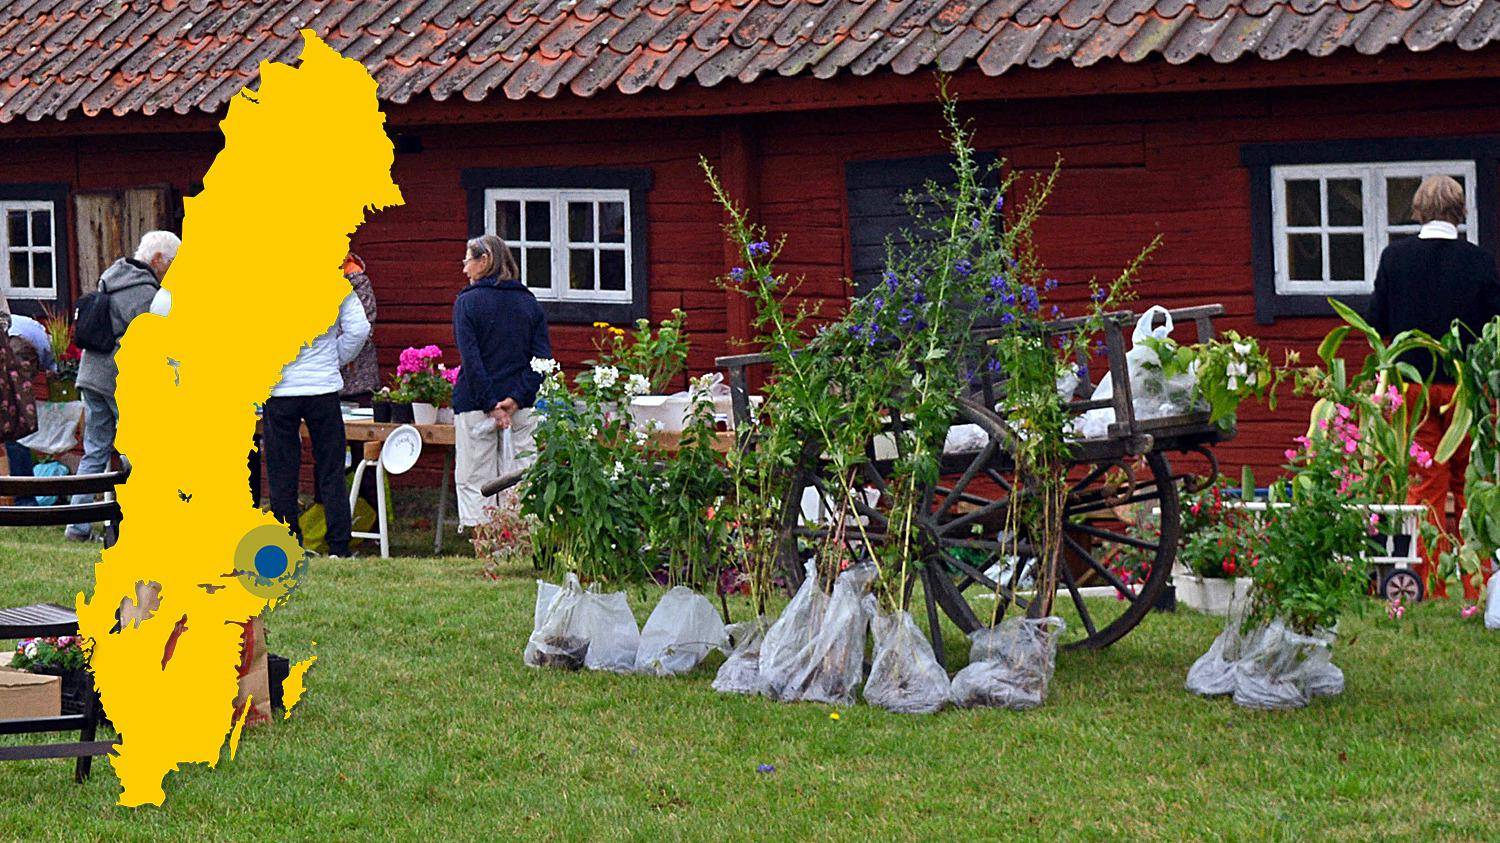 Blumen auf einem grünen Rasen vor einem roten Holzhaus. Eine gelbe Karte von Schweden mit einer Markierung, die den Standort von Björksta anzeigt.